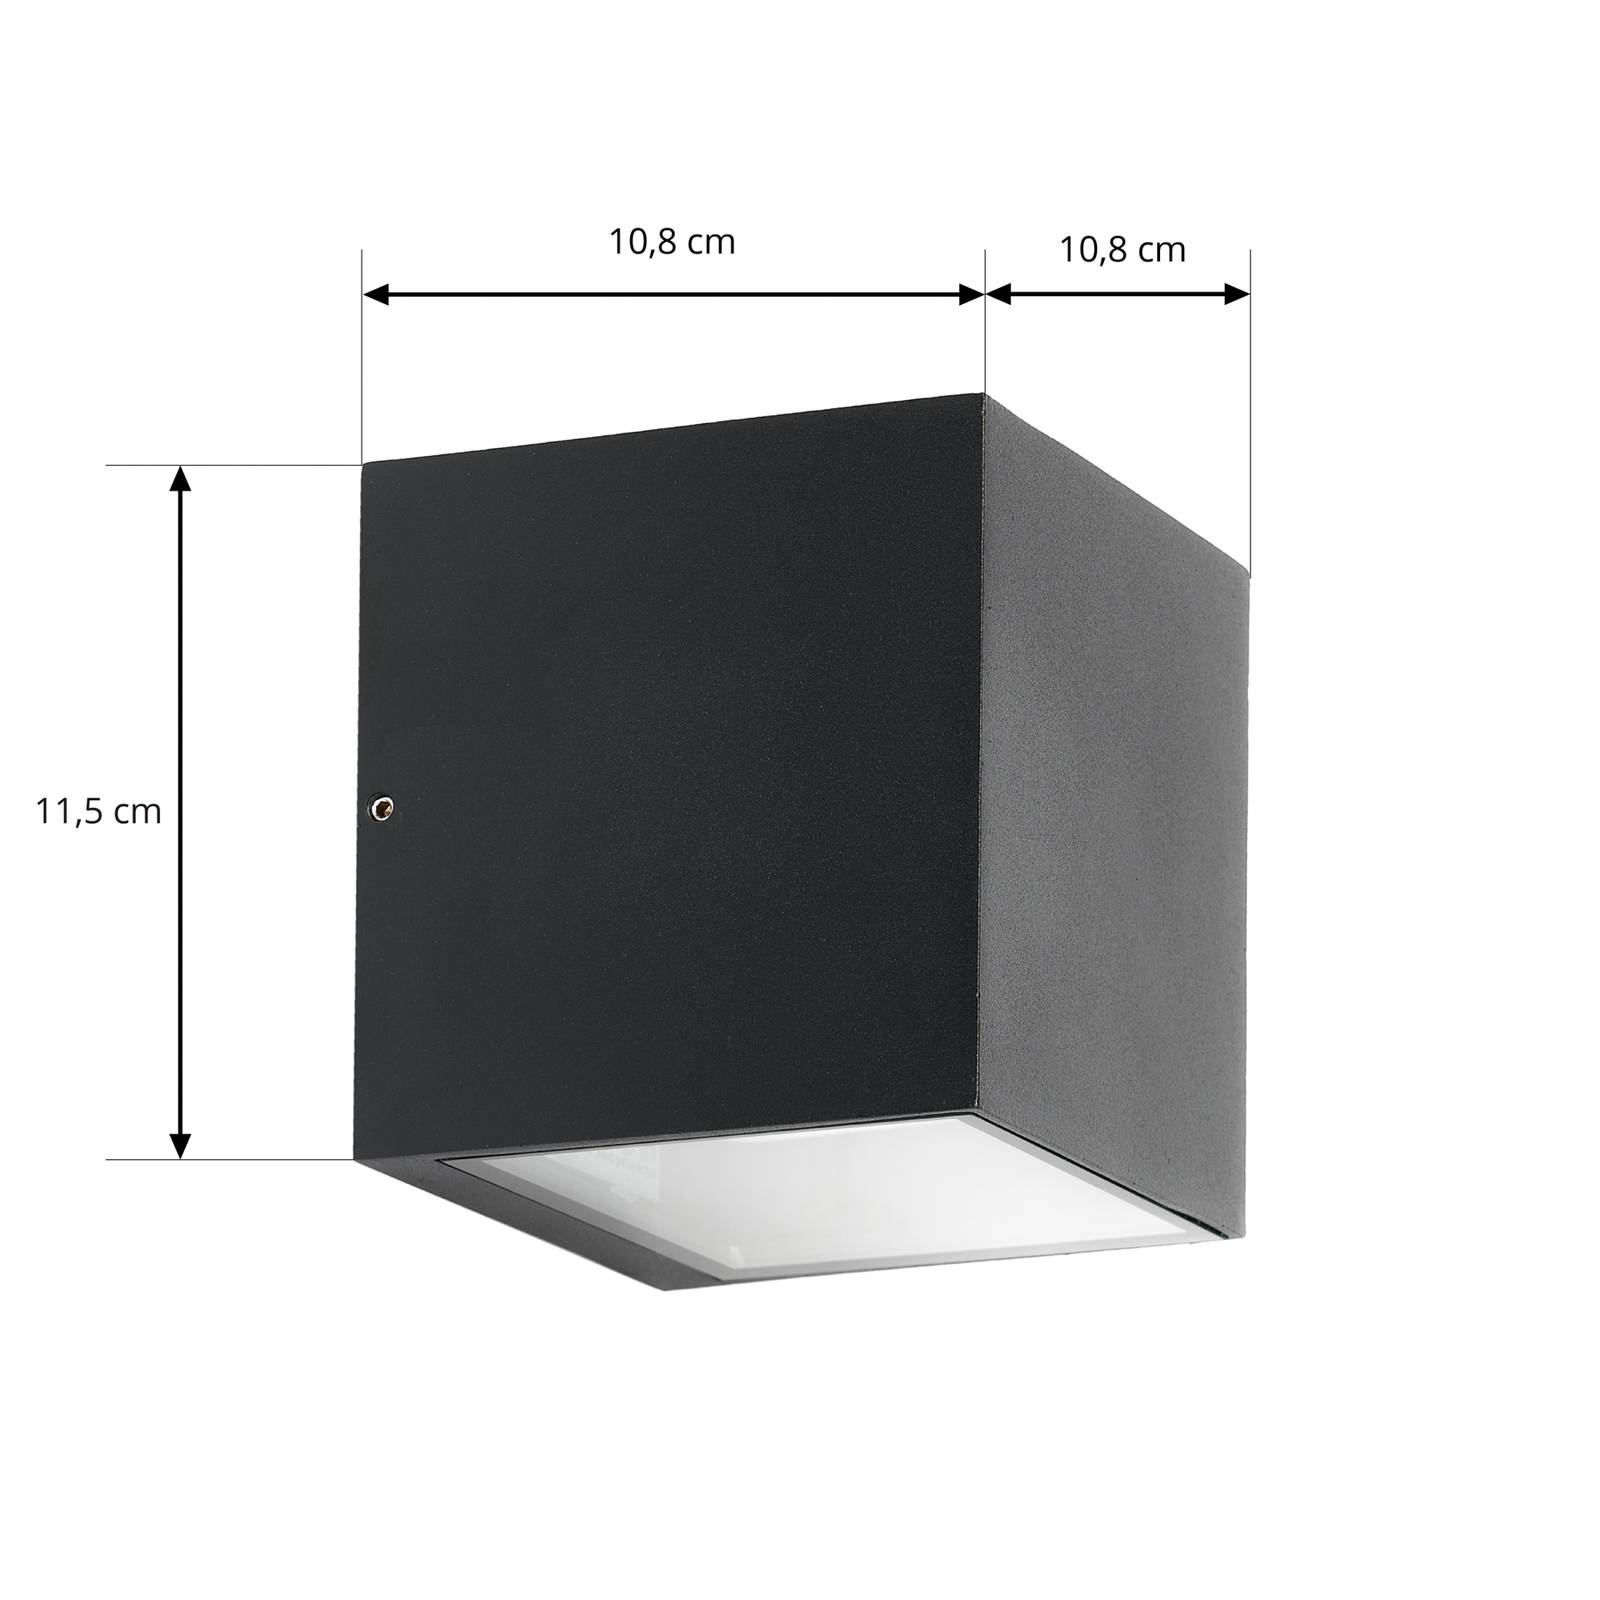 Prios udendørs væglampe Tetje sort kantet 11,5 cm